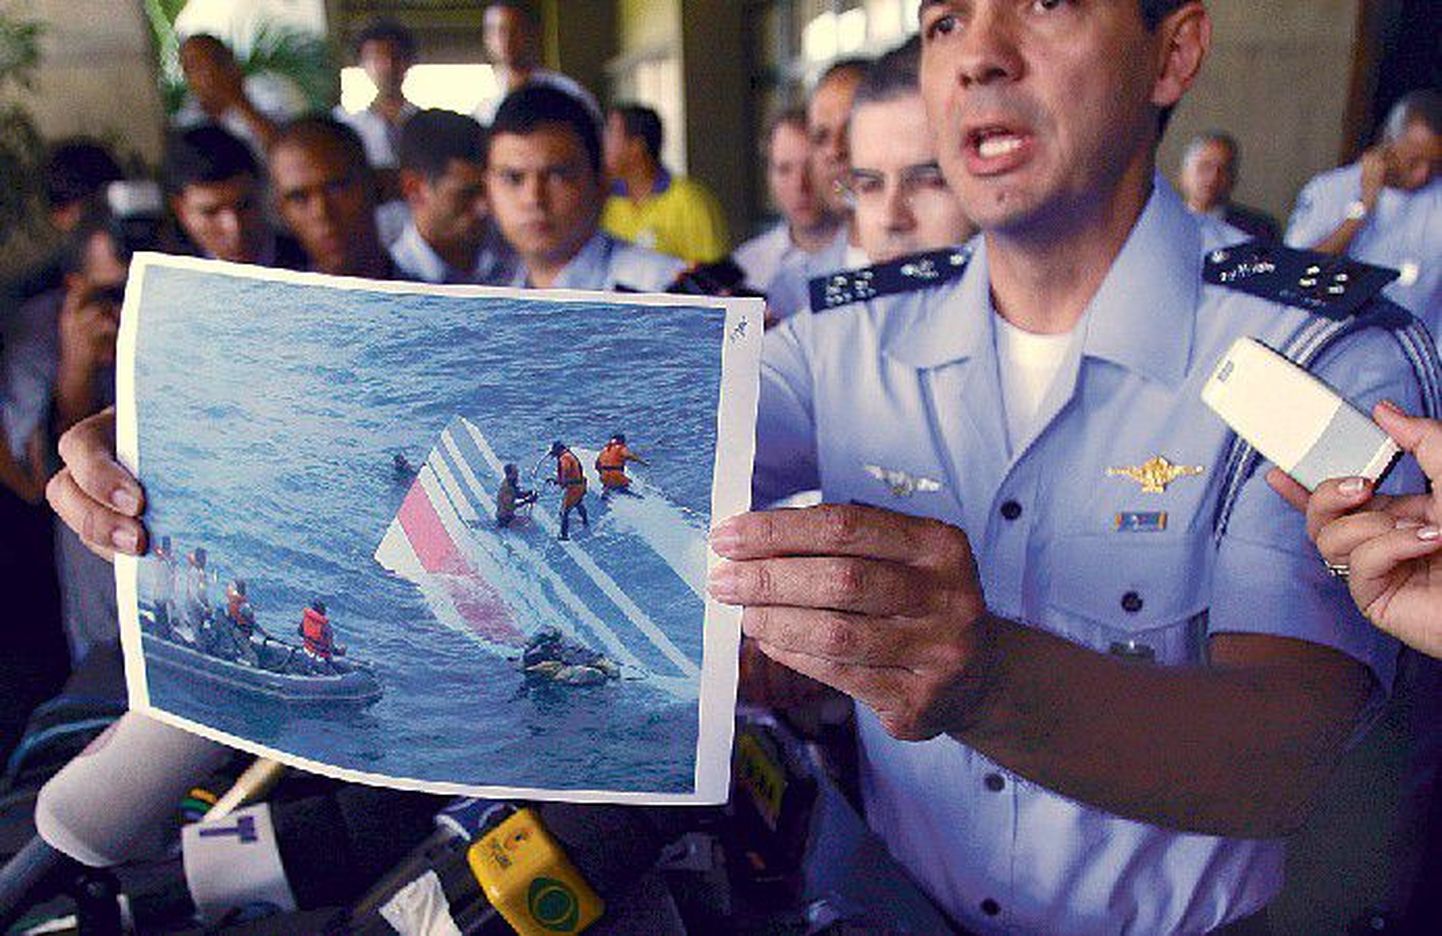 Brasiilia lennujõudude ametnik Henry Munhoz näitab pressikonverentsil fotot hetkest, mil Atlandi ookeanist         tõmmati välja alla kukkunud Airbusi sabatükk.